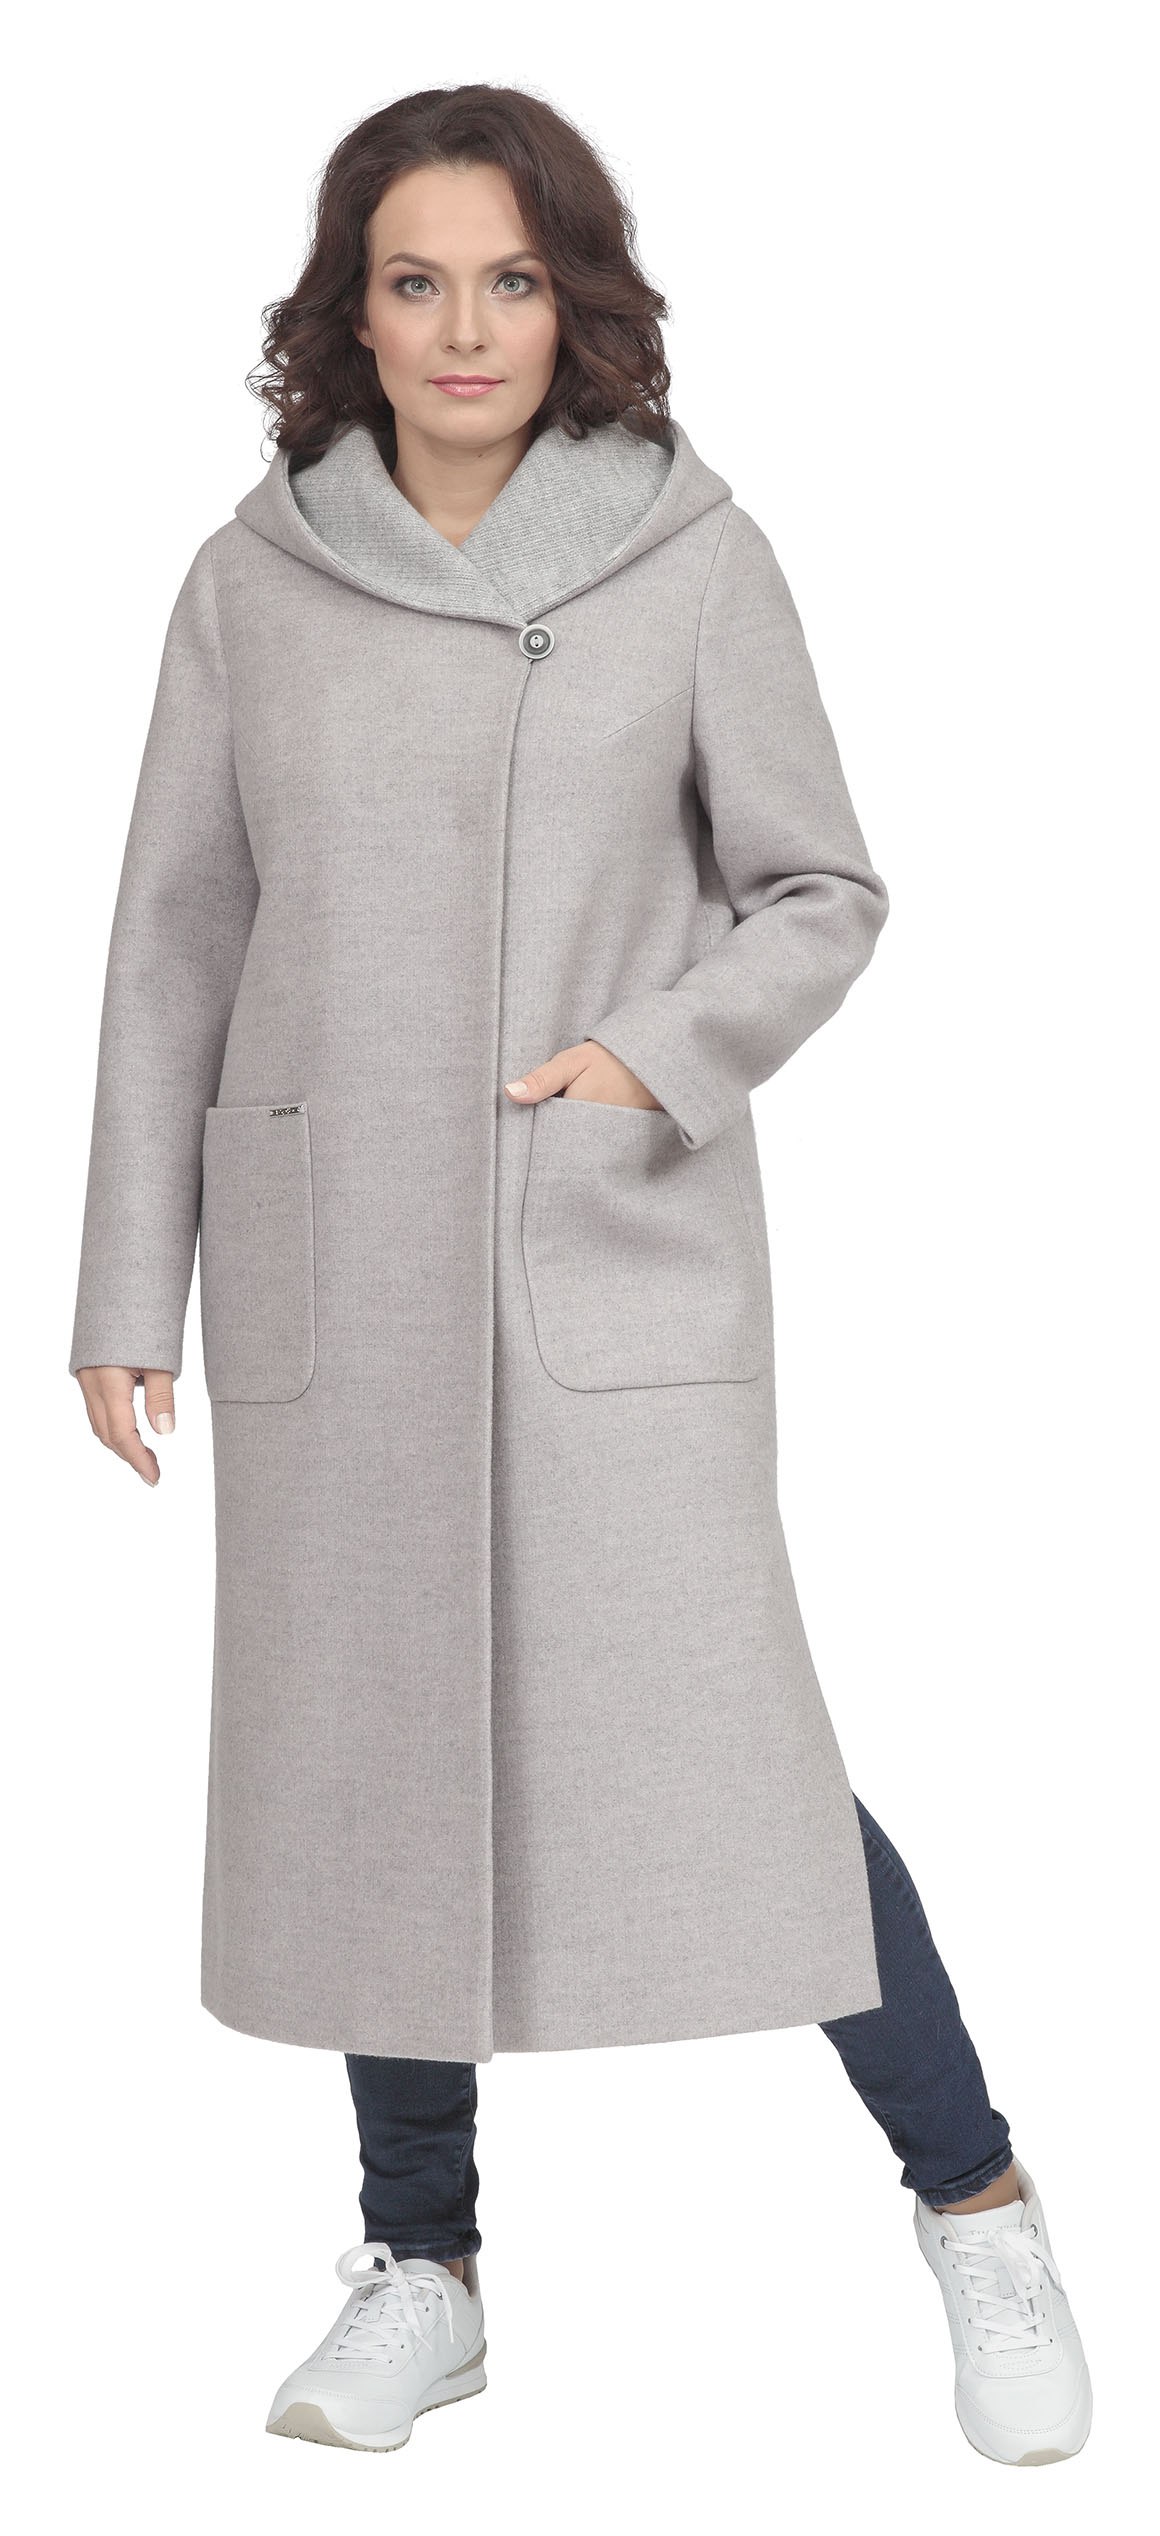 Пальто женское демисезонное 54. Белорусские пальто Eurydike. Пальто Пд 1410. Вестфалика пальто женское. Пальто женское буклированное демисезонное 56 размер.